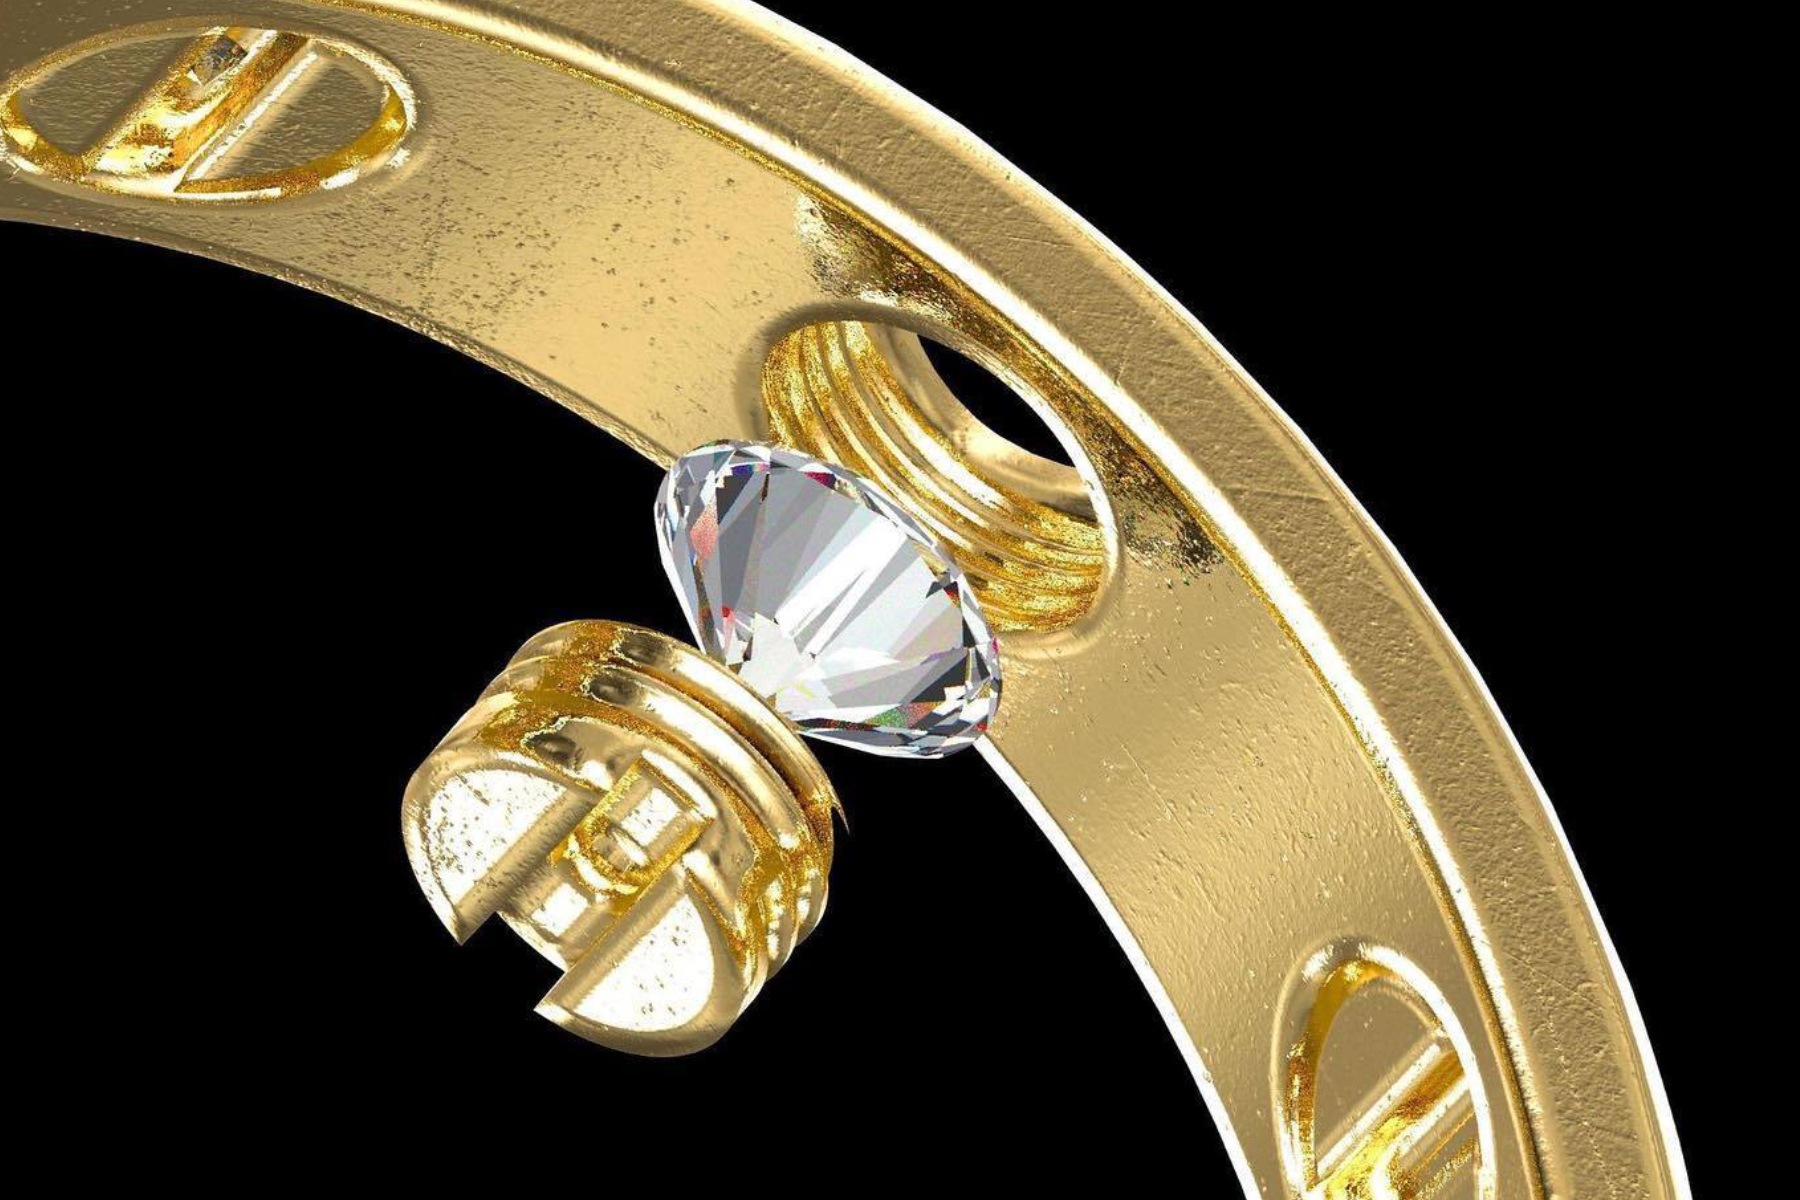 Frank Ocean's Homer designed Tremaine Emory's wedding rings.